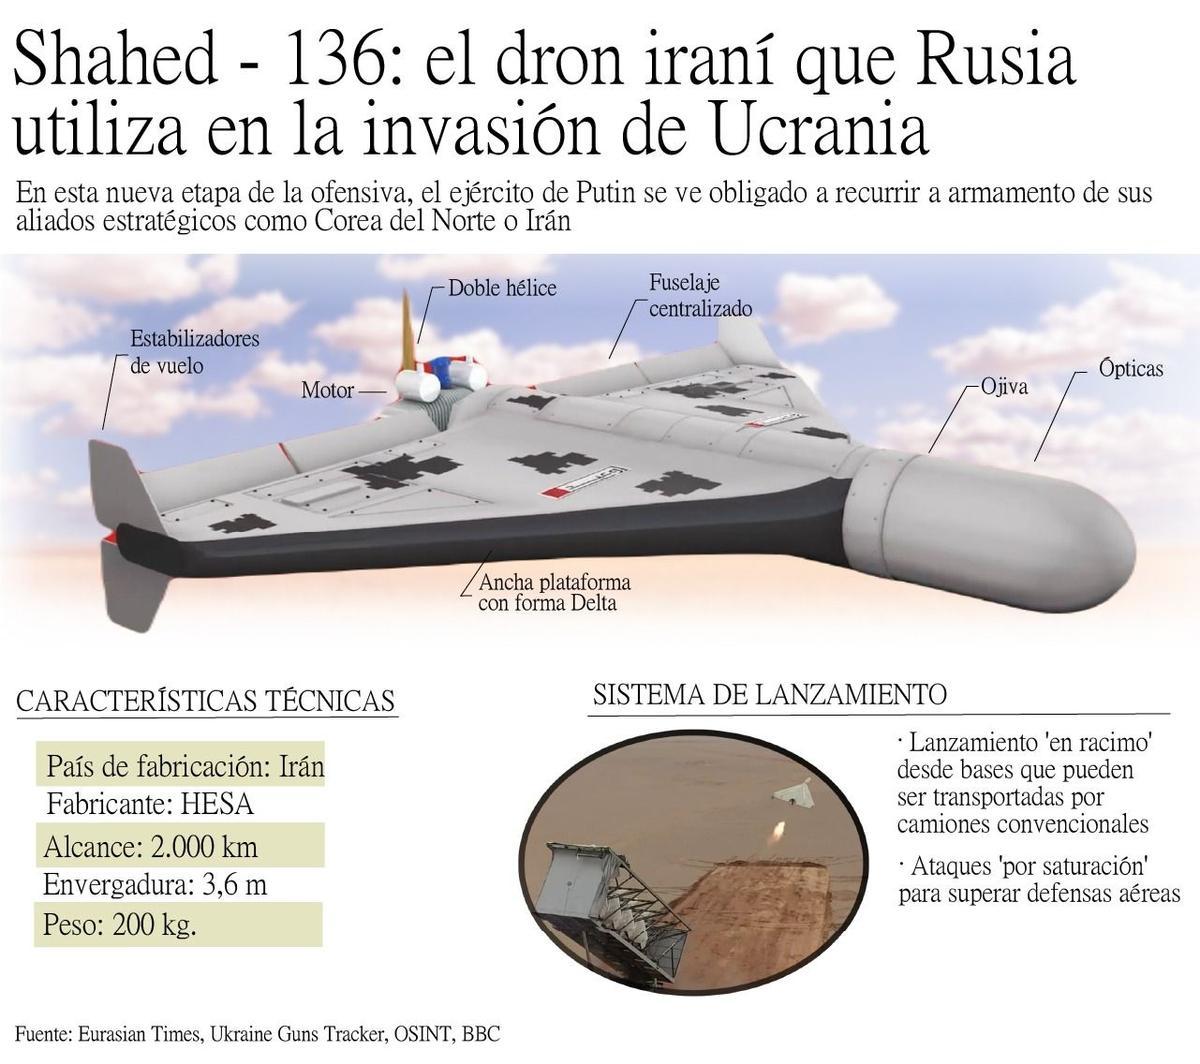 El dron iraní que Rusia usa en Ucrania.